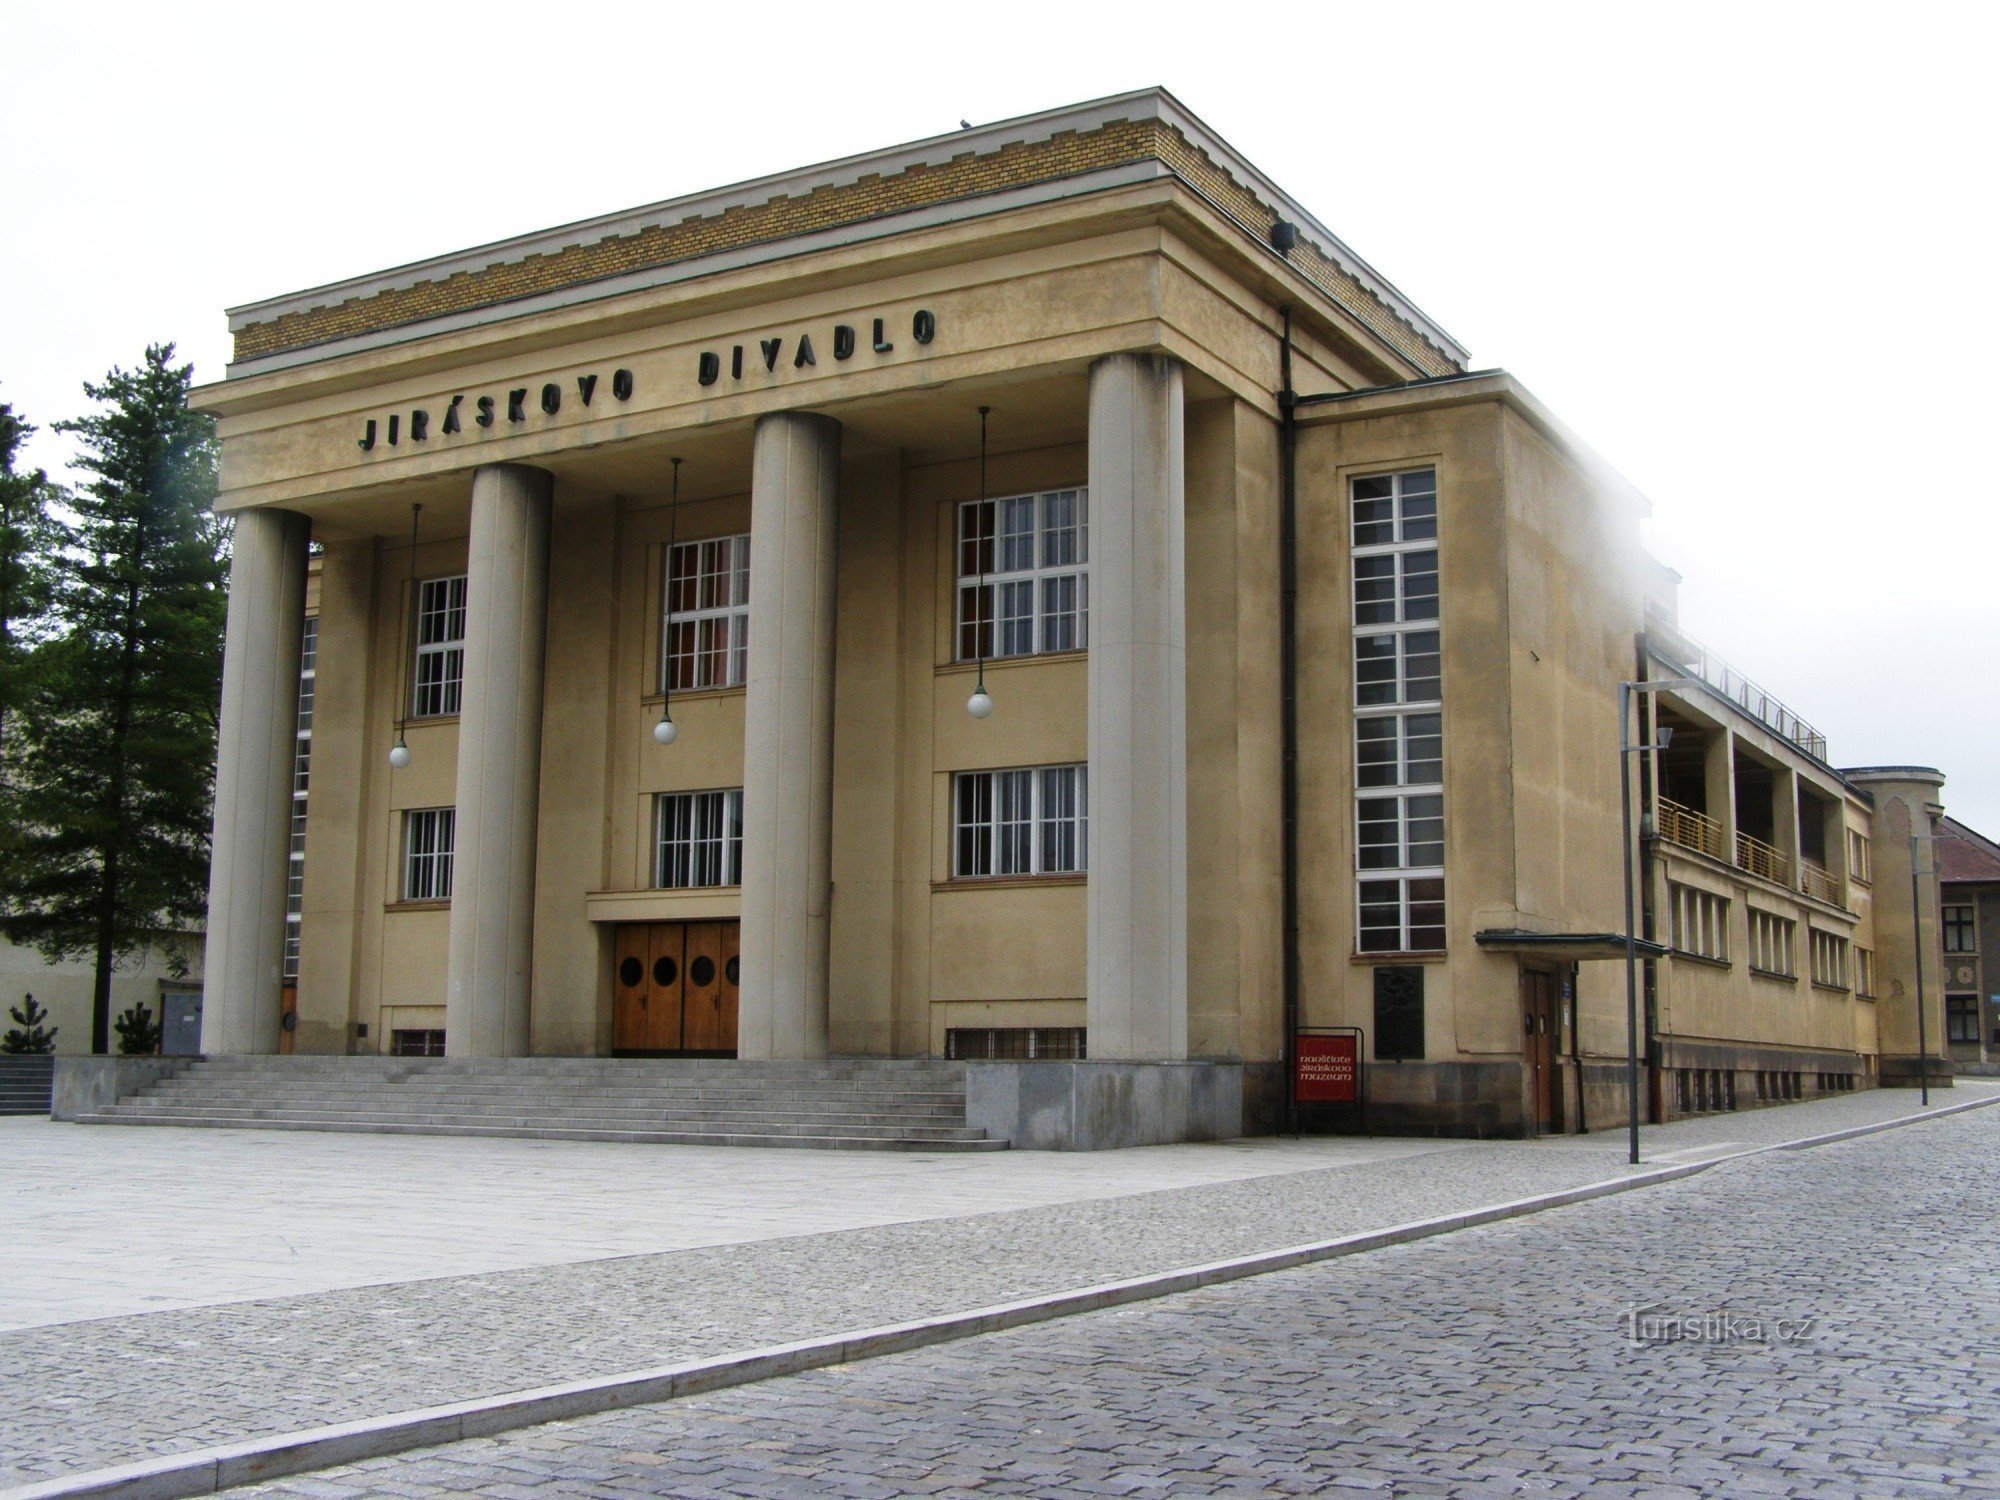 Hronov - Jirásk Teater, museum